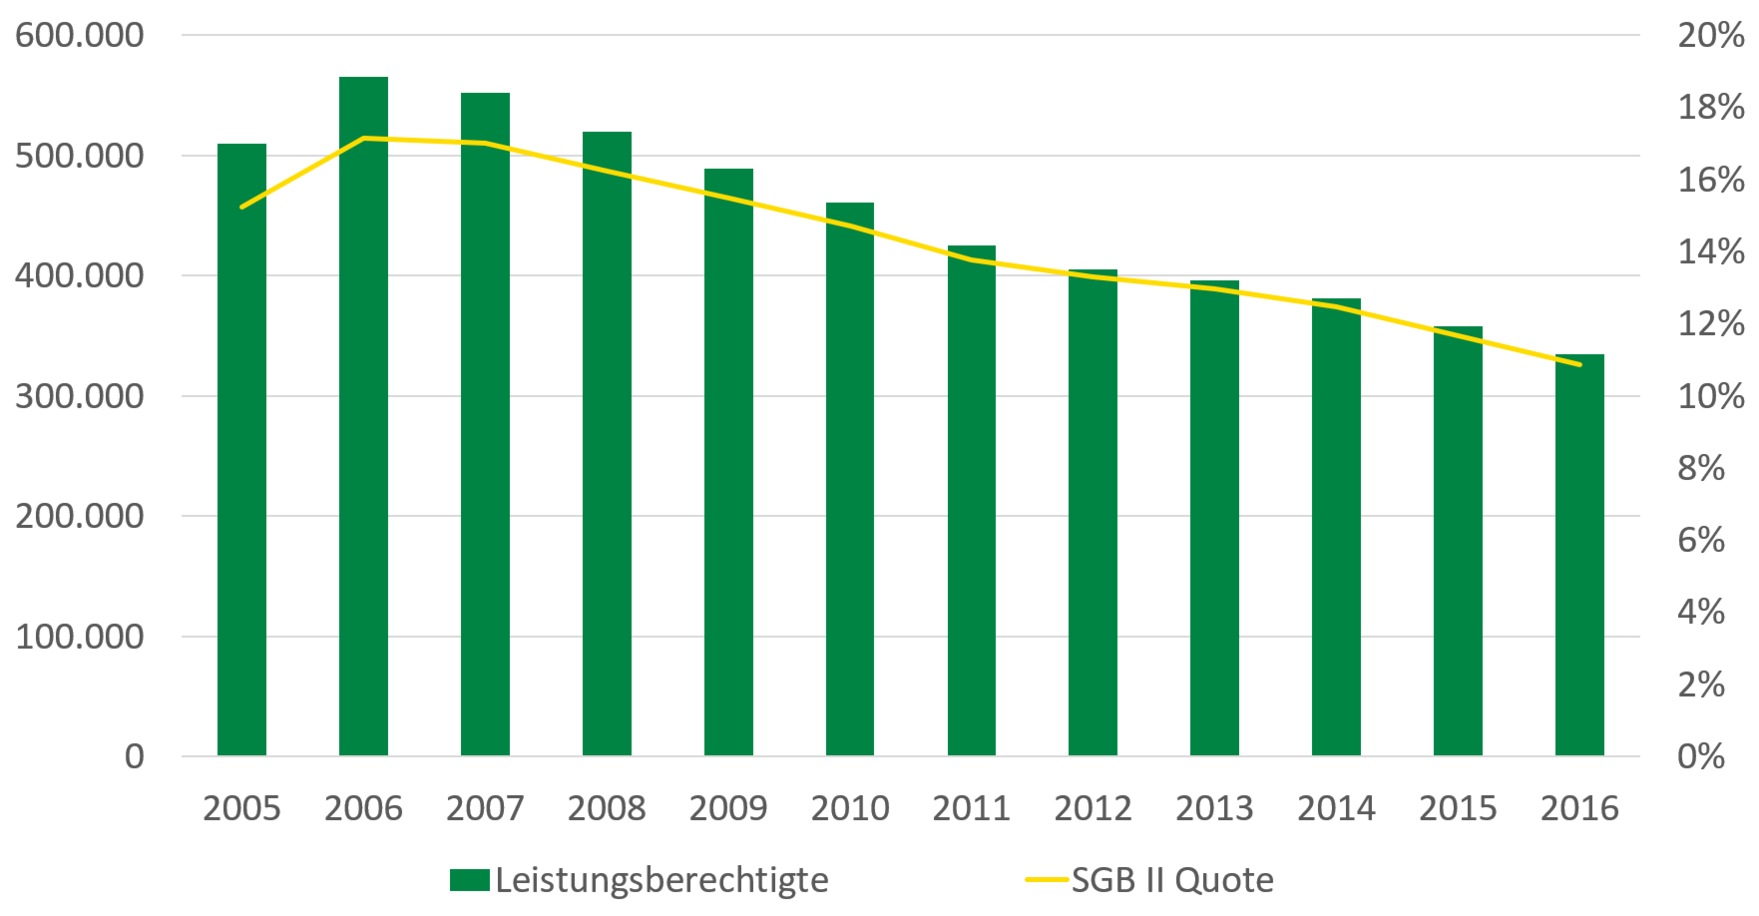 Die Anzahl der Leistungsberechtigten sowie die SGB-II-Quote stiegen von 2005 auf 2006 und sind dann bis 2016 kontinuierlich gesunken.